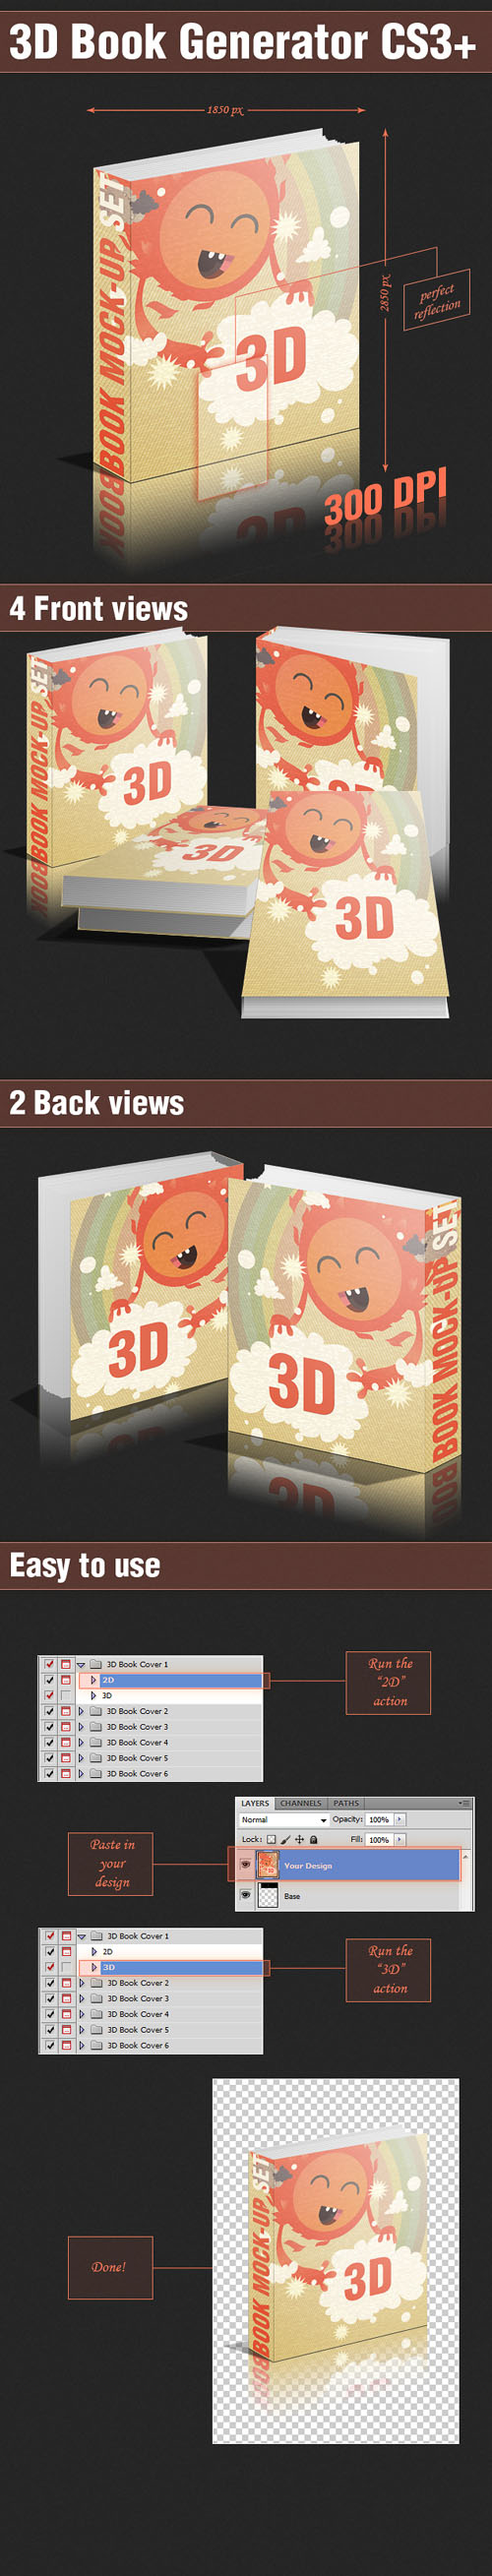 Designtnt - 3D Book Generator PS Actions